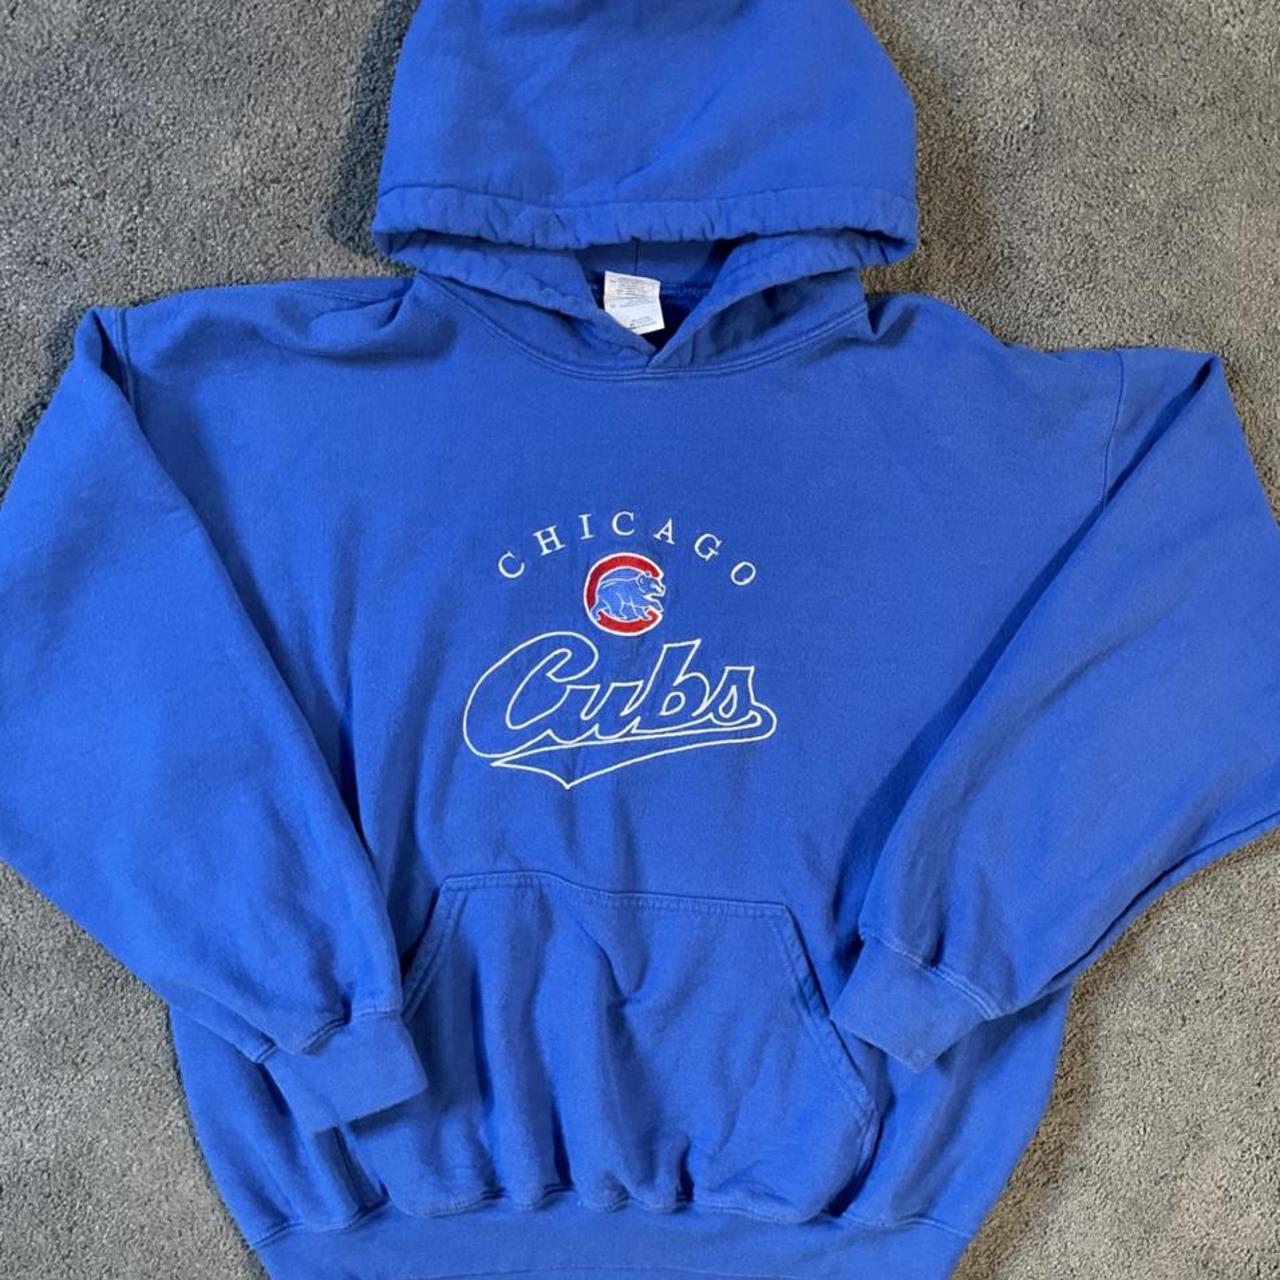 Vintage Chicago Cubs hoodie. Size L. #Cubs #Chicago... - Depop